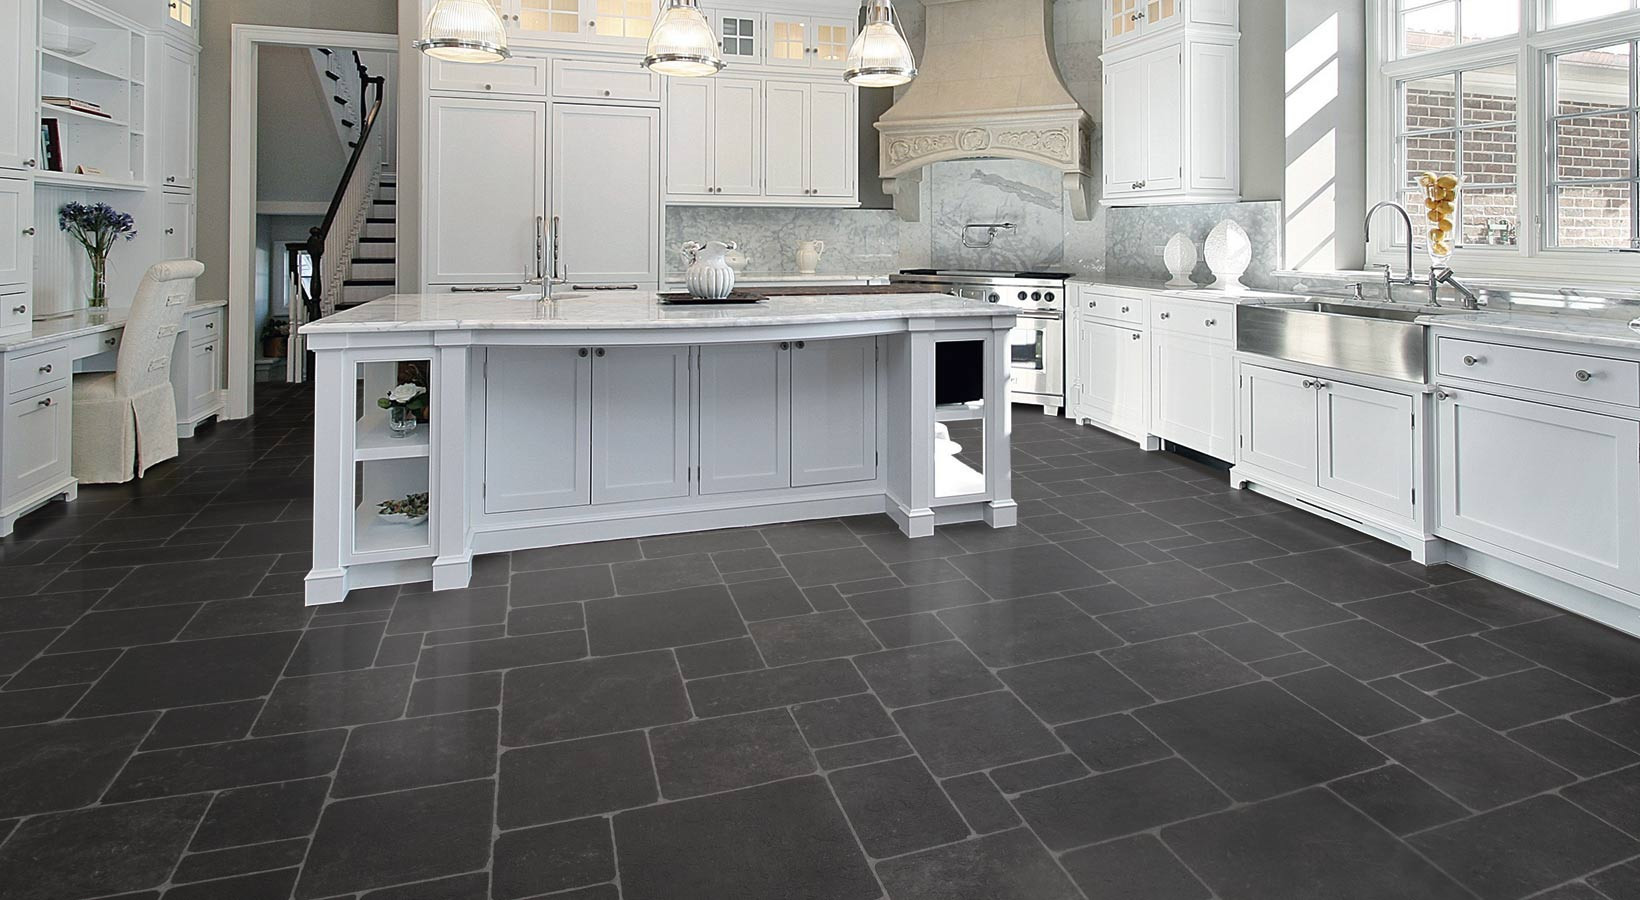 Slate Floors In Kitchen
 20 Trendy Slate Kitchen Floor Tiles – Home Family Style